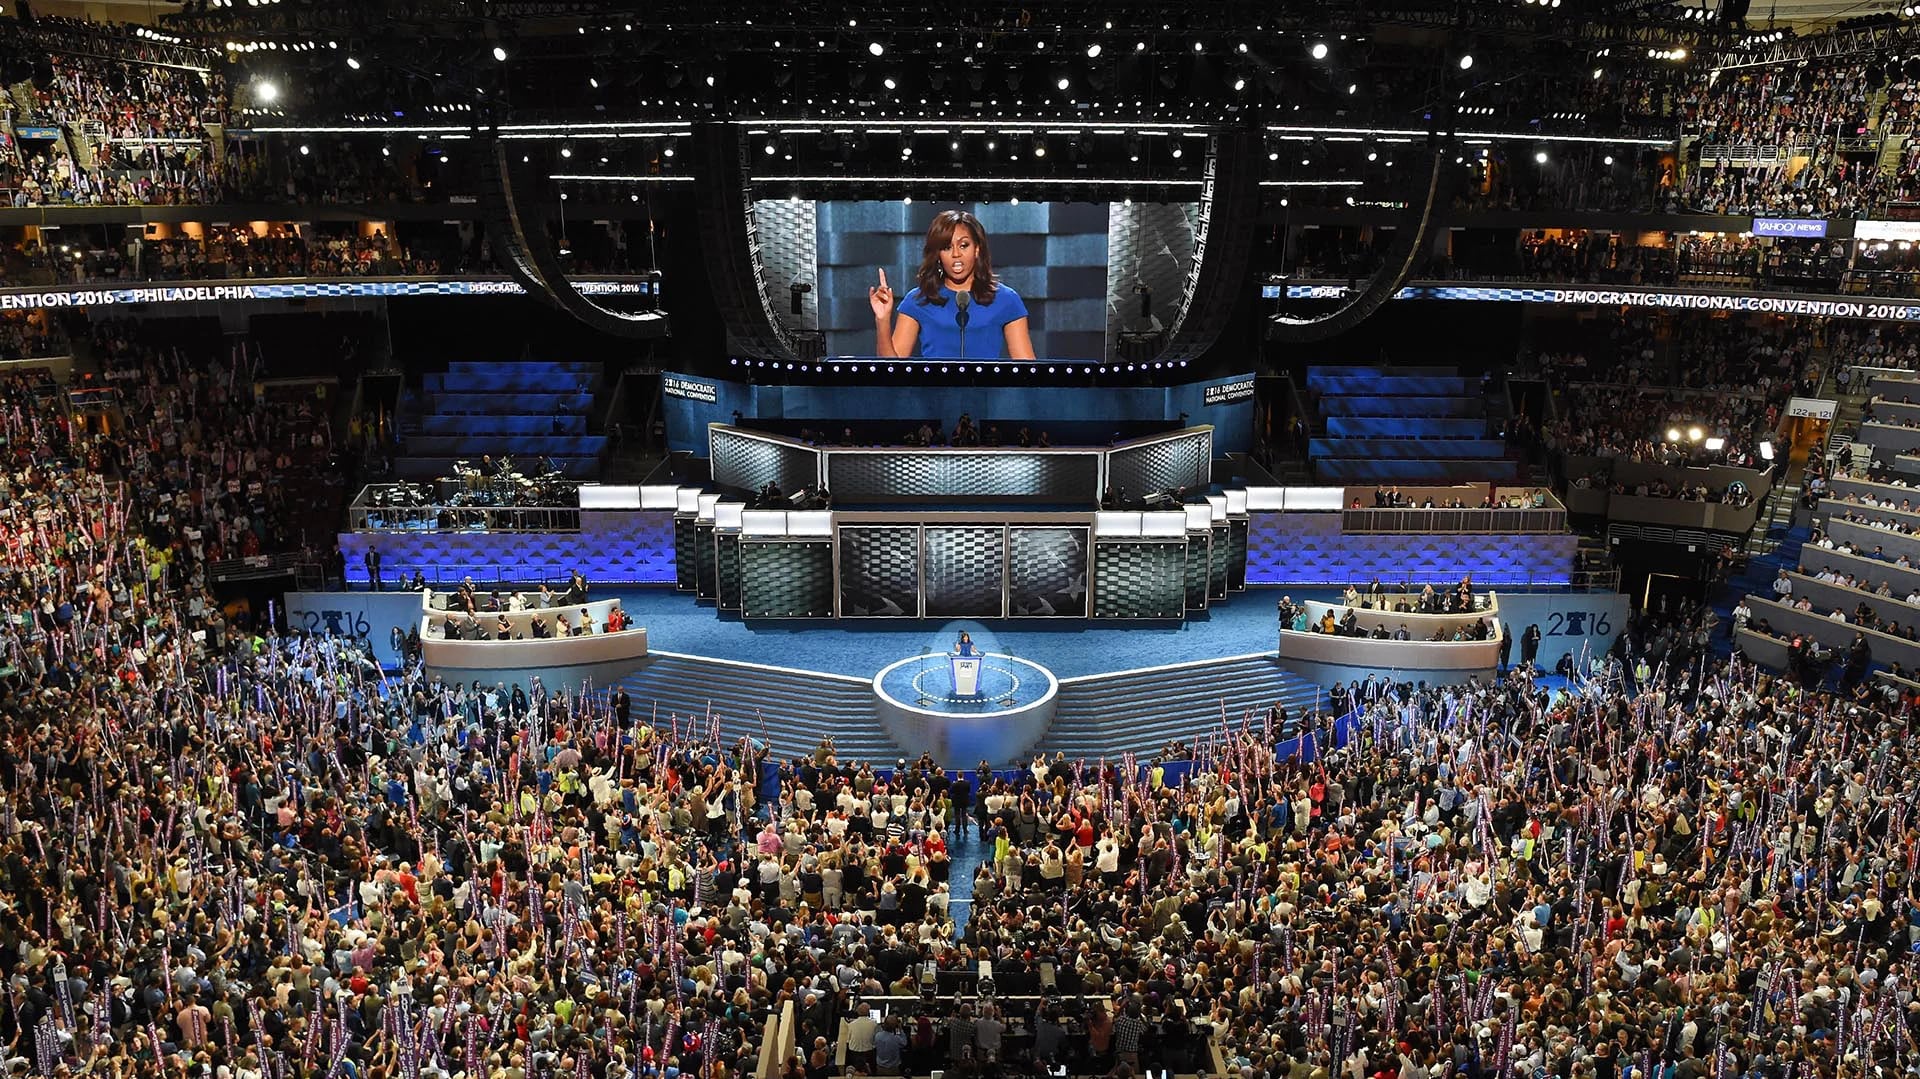 La primera dama de los Estados Unidos demostró una vez más sus dotes como oradora ante una multitud que la escuchó con atención durante todo su discurso durante la primera noche de la convención nacional demócrata (AFP)